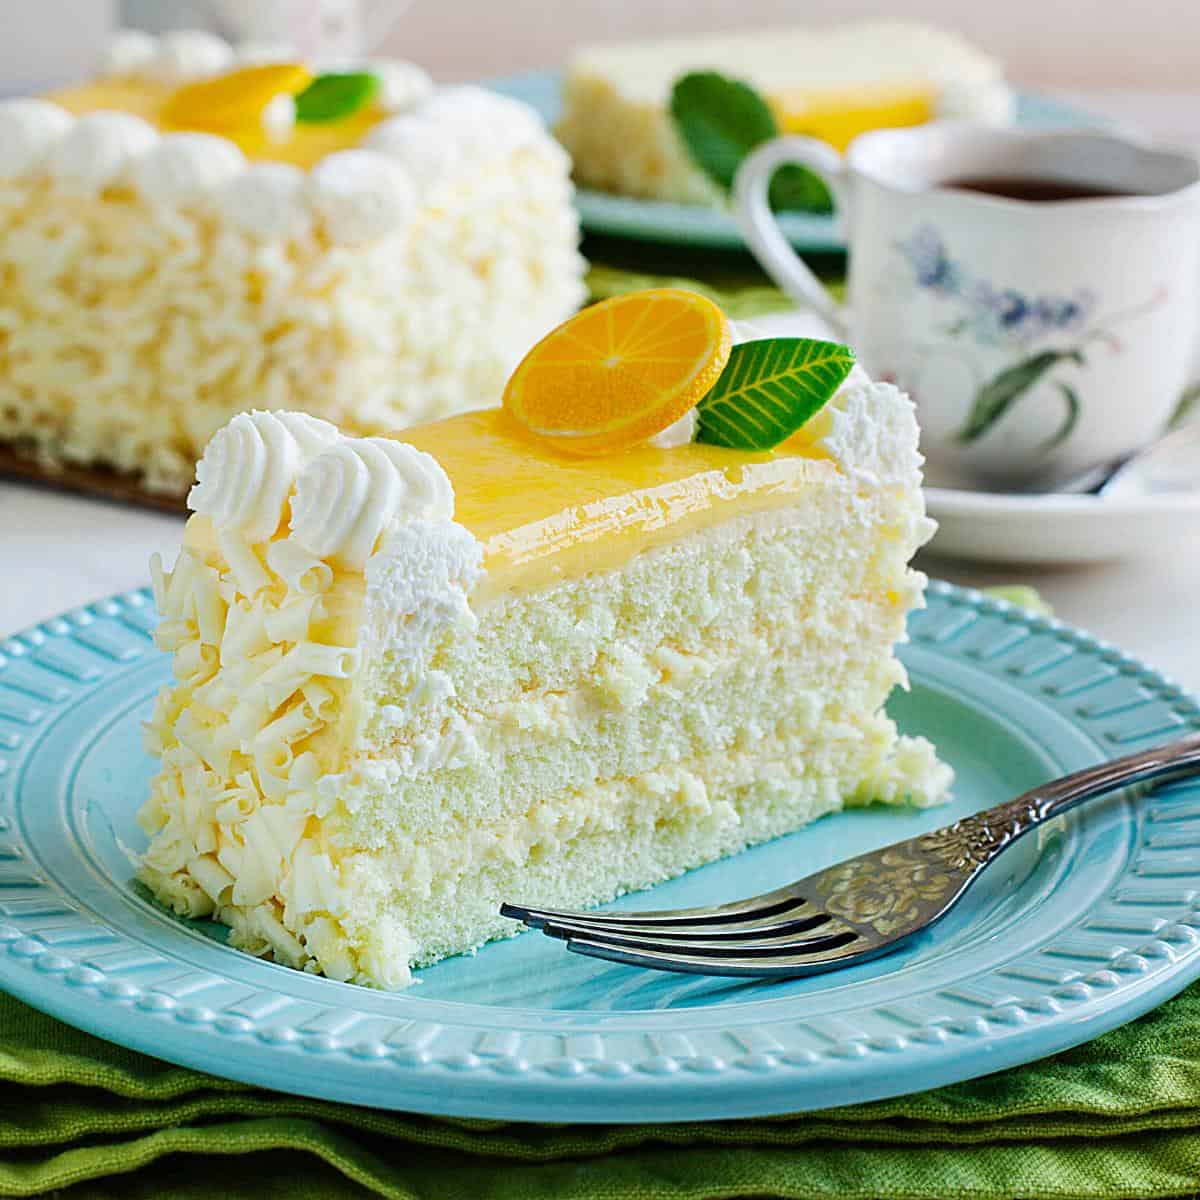 Lemon cake on a plate.